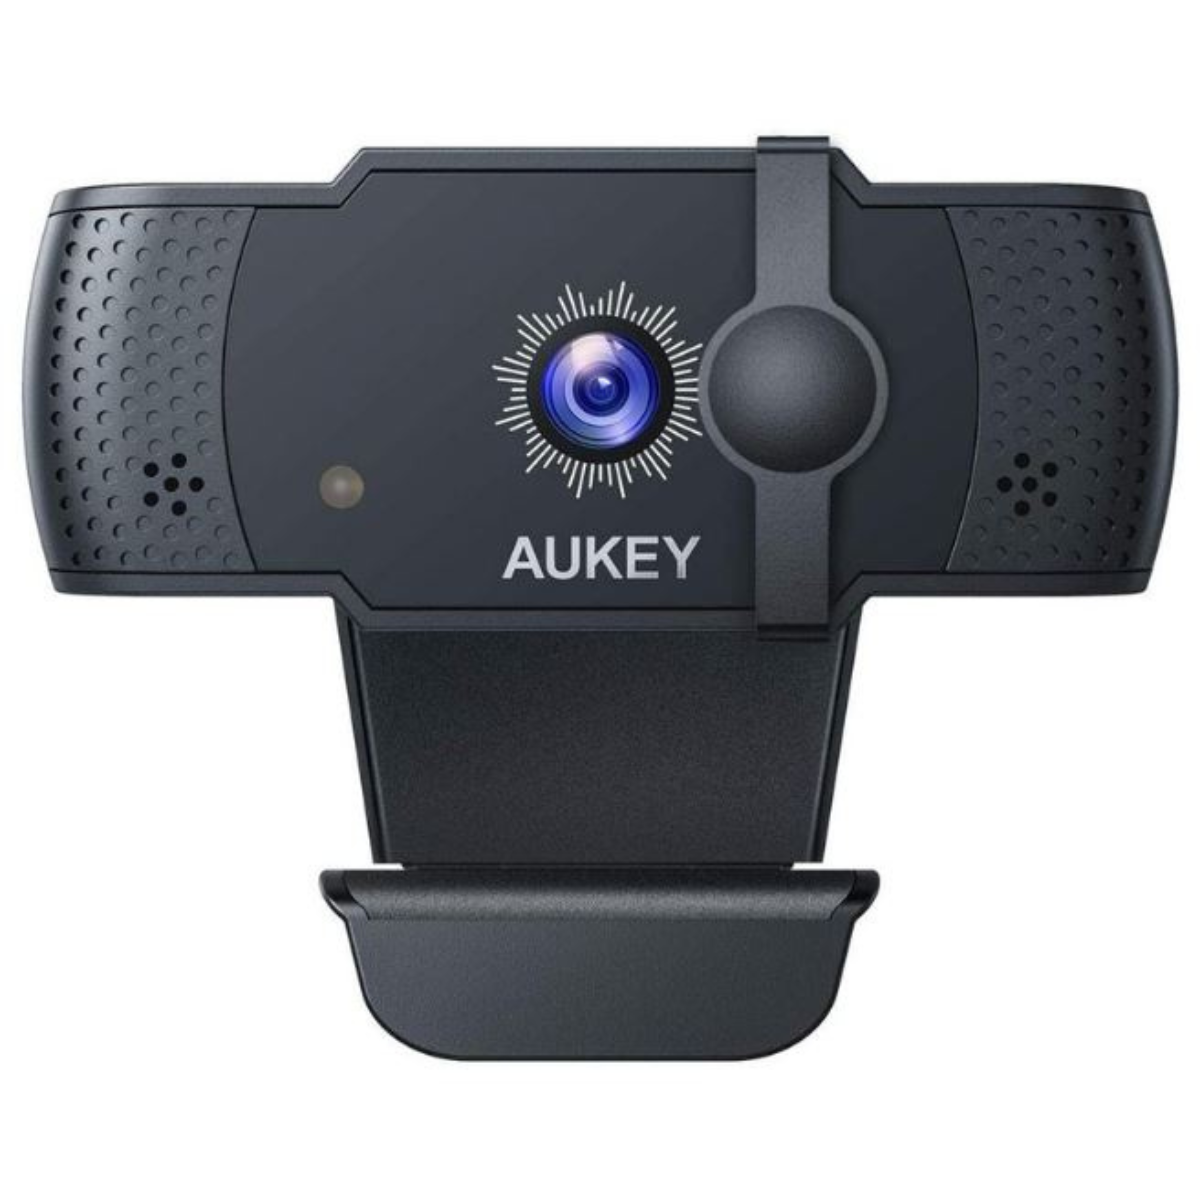 AUKEY PC-LM4 Webkamera